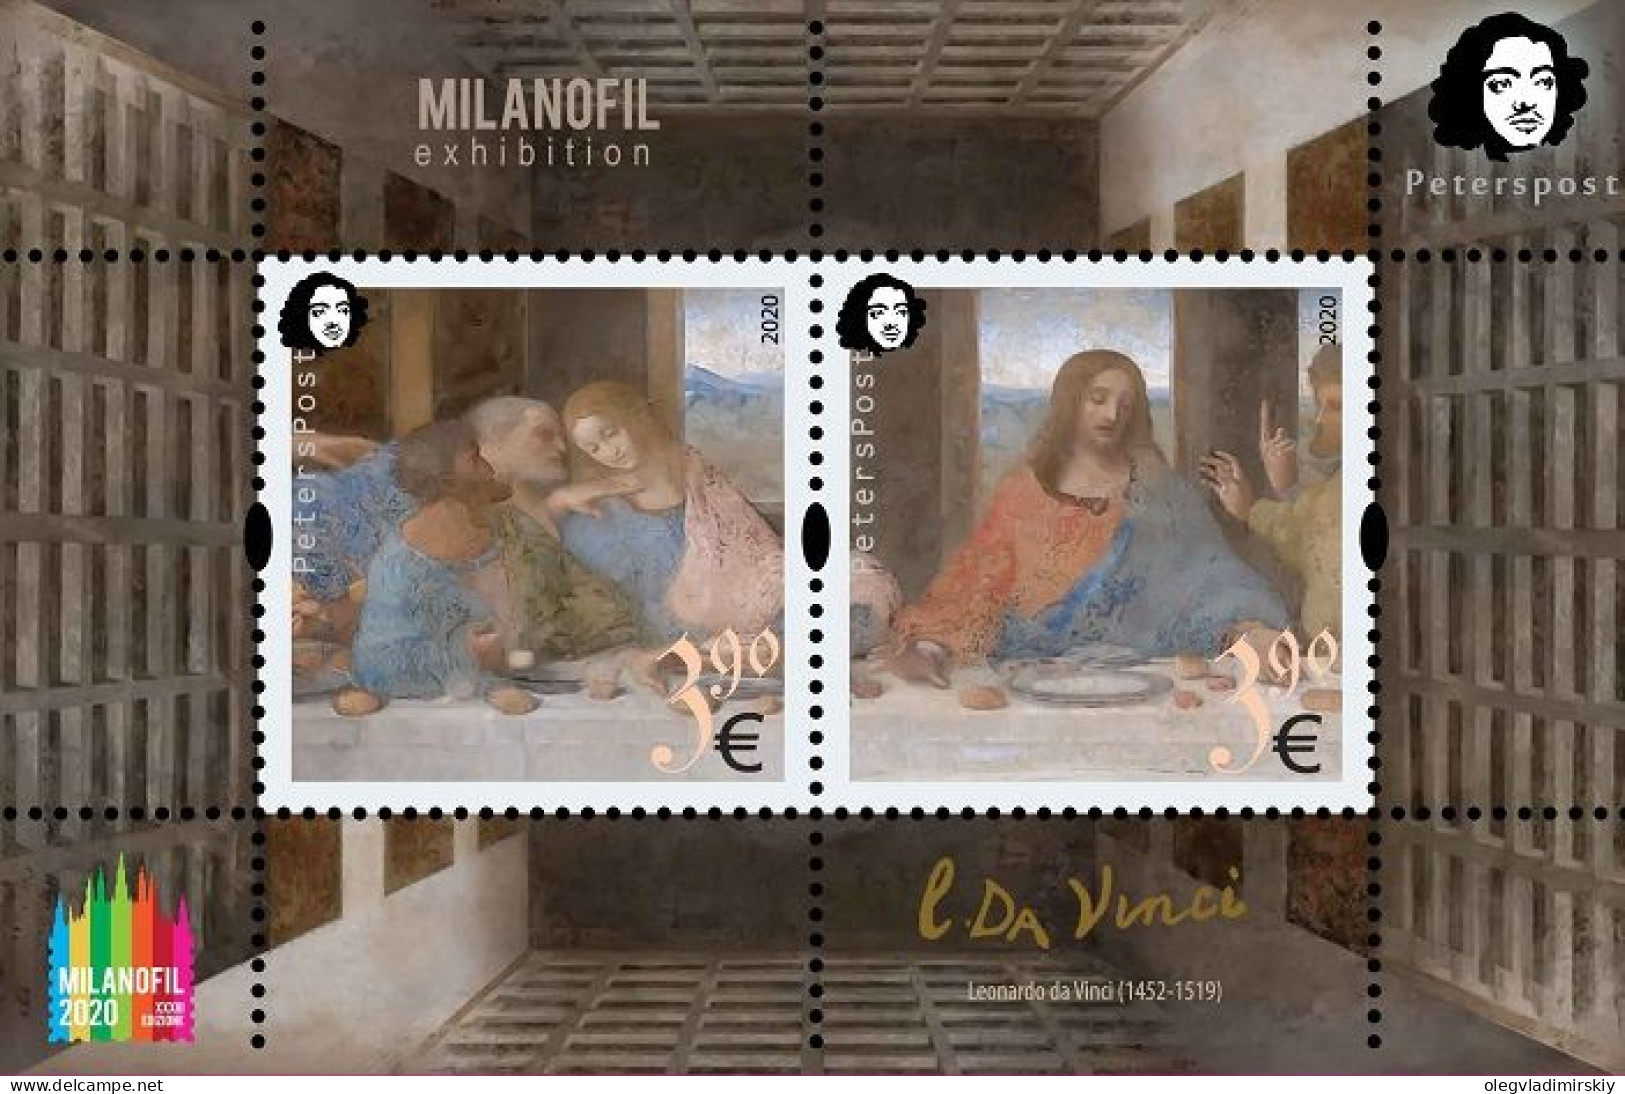 Finland 2020 Leonardo Da Vinci 500 Years From The Date Of Death "The Lord's Supper" MILANOFIL-2020 Peterspost Block MNH - Blocchi E Foglietti